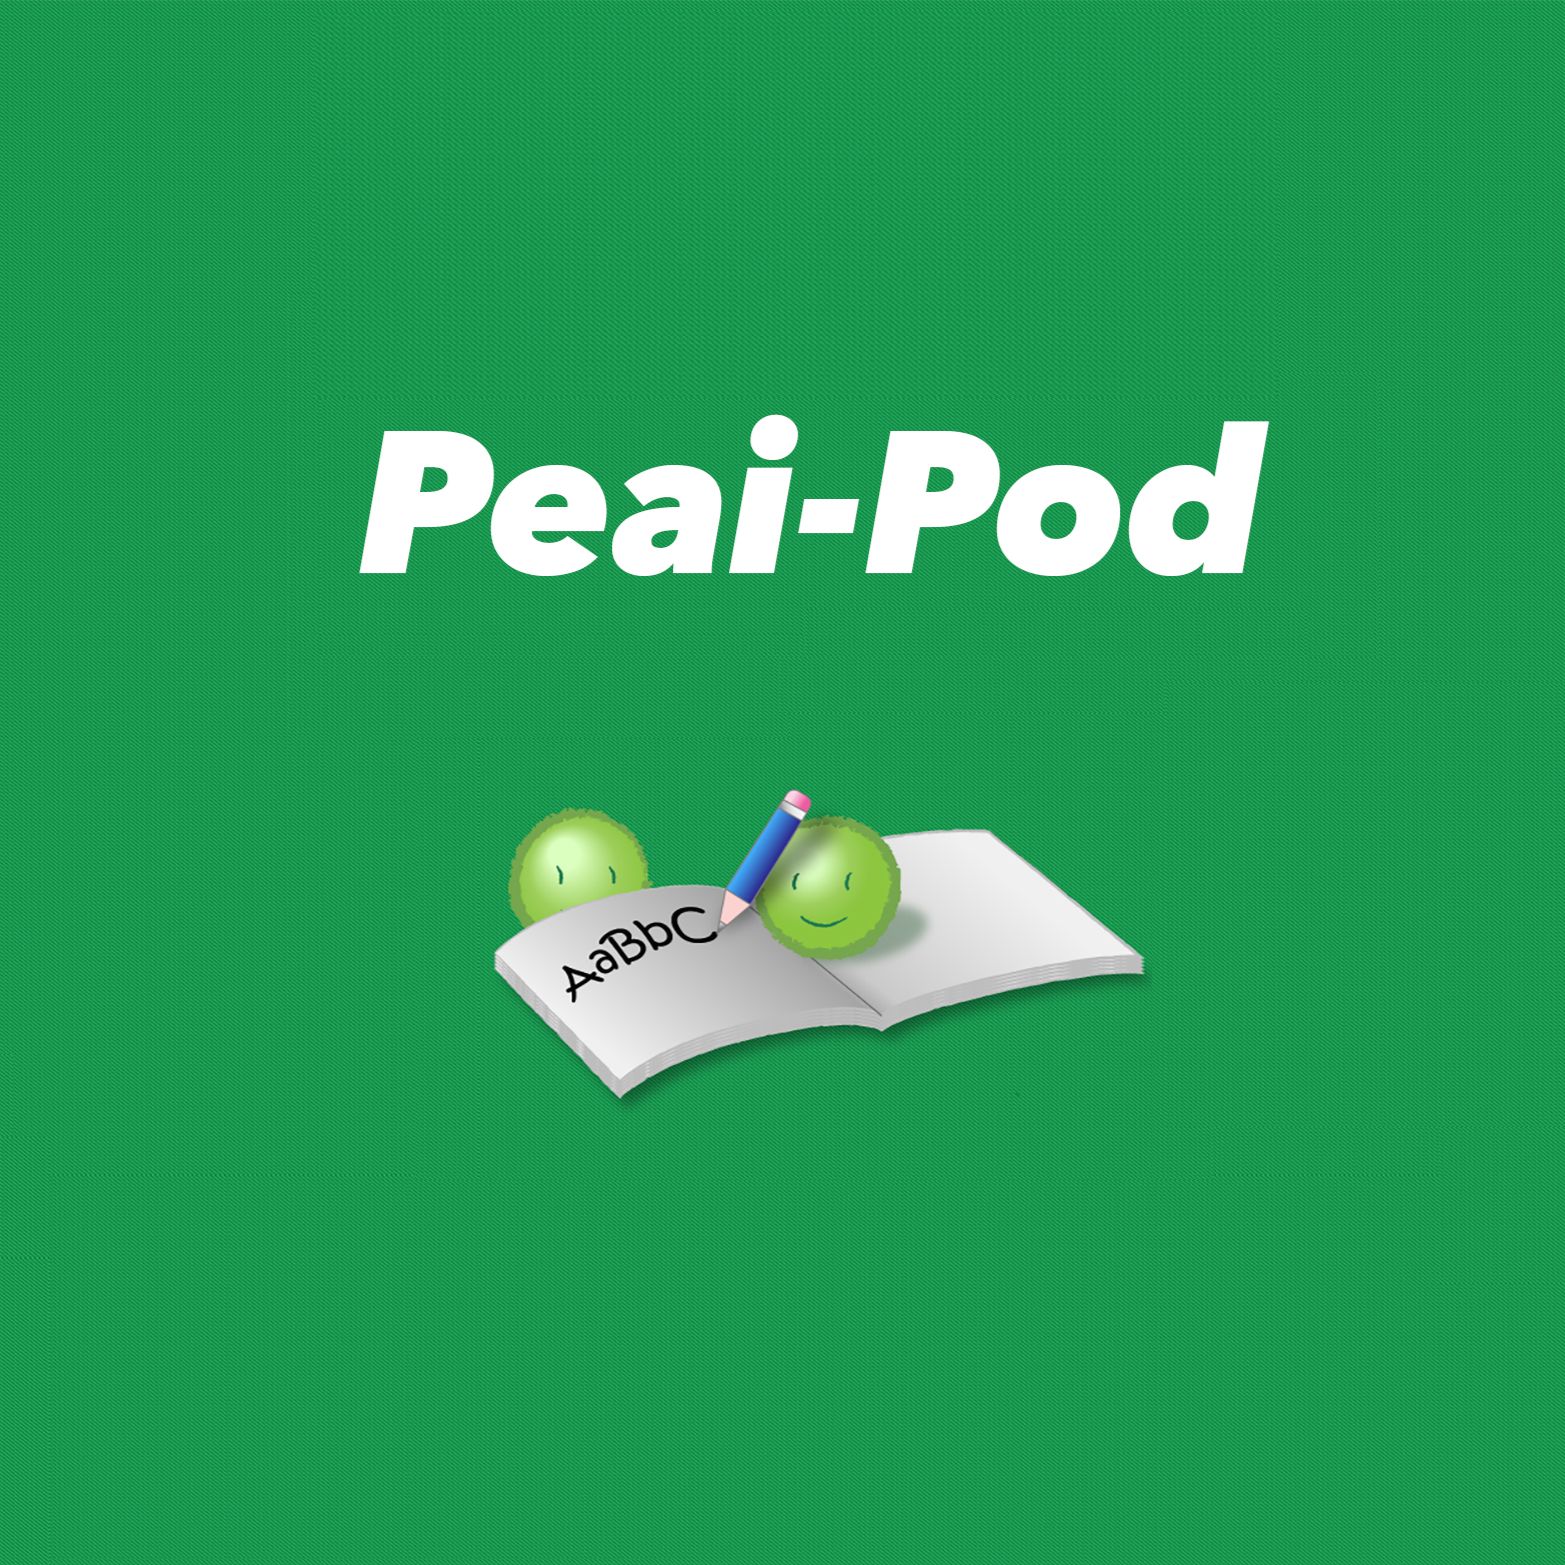 The Peai-Pod